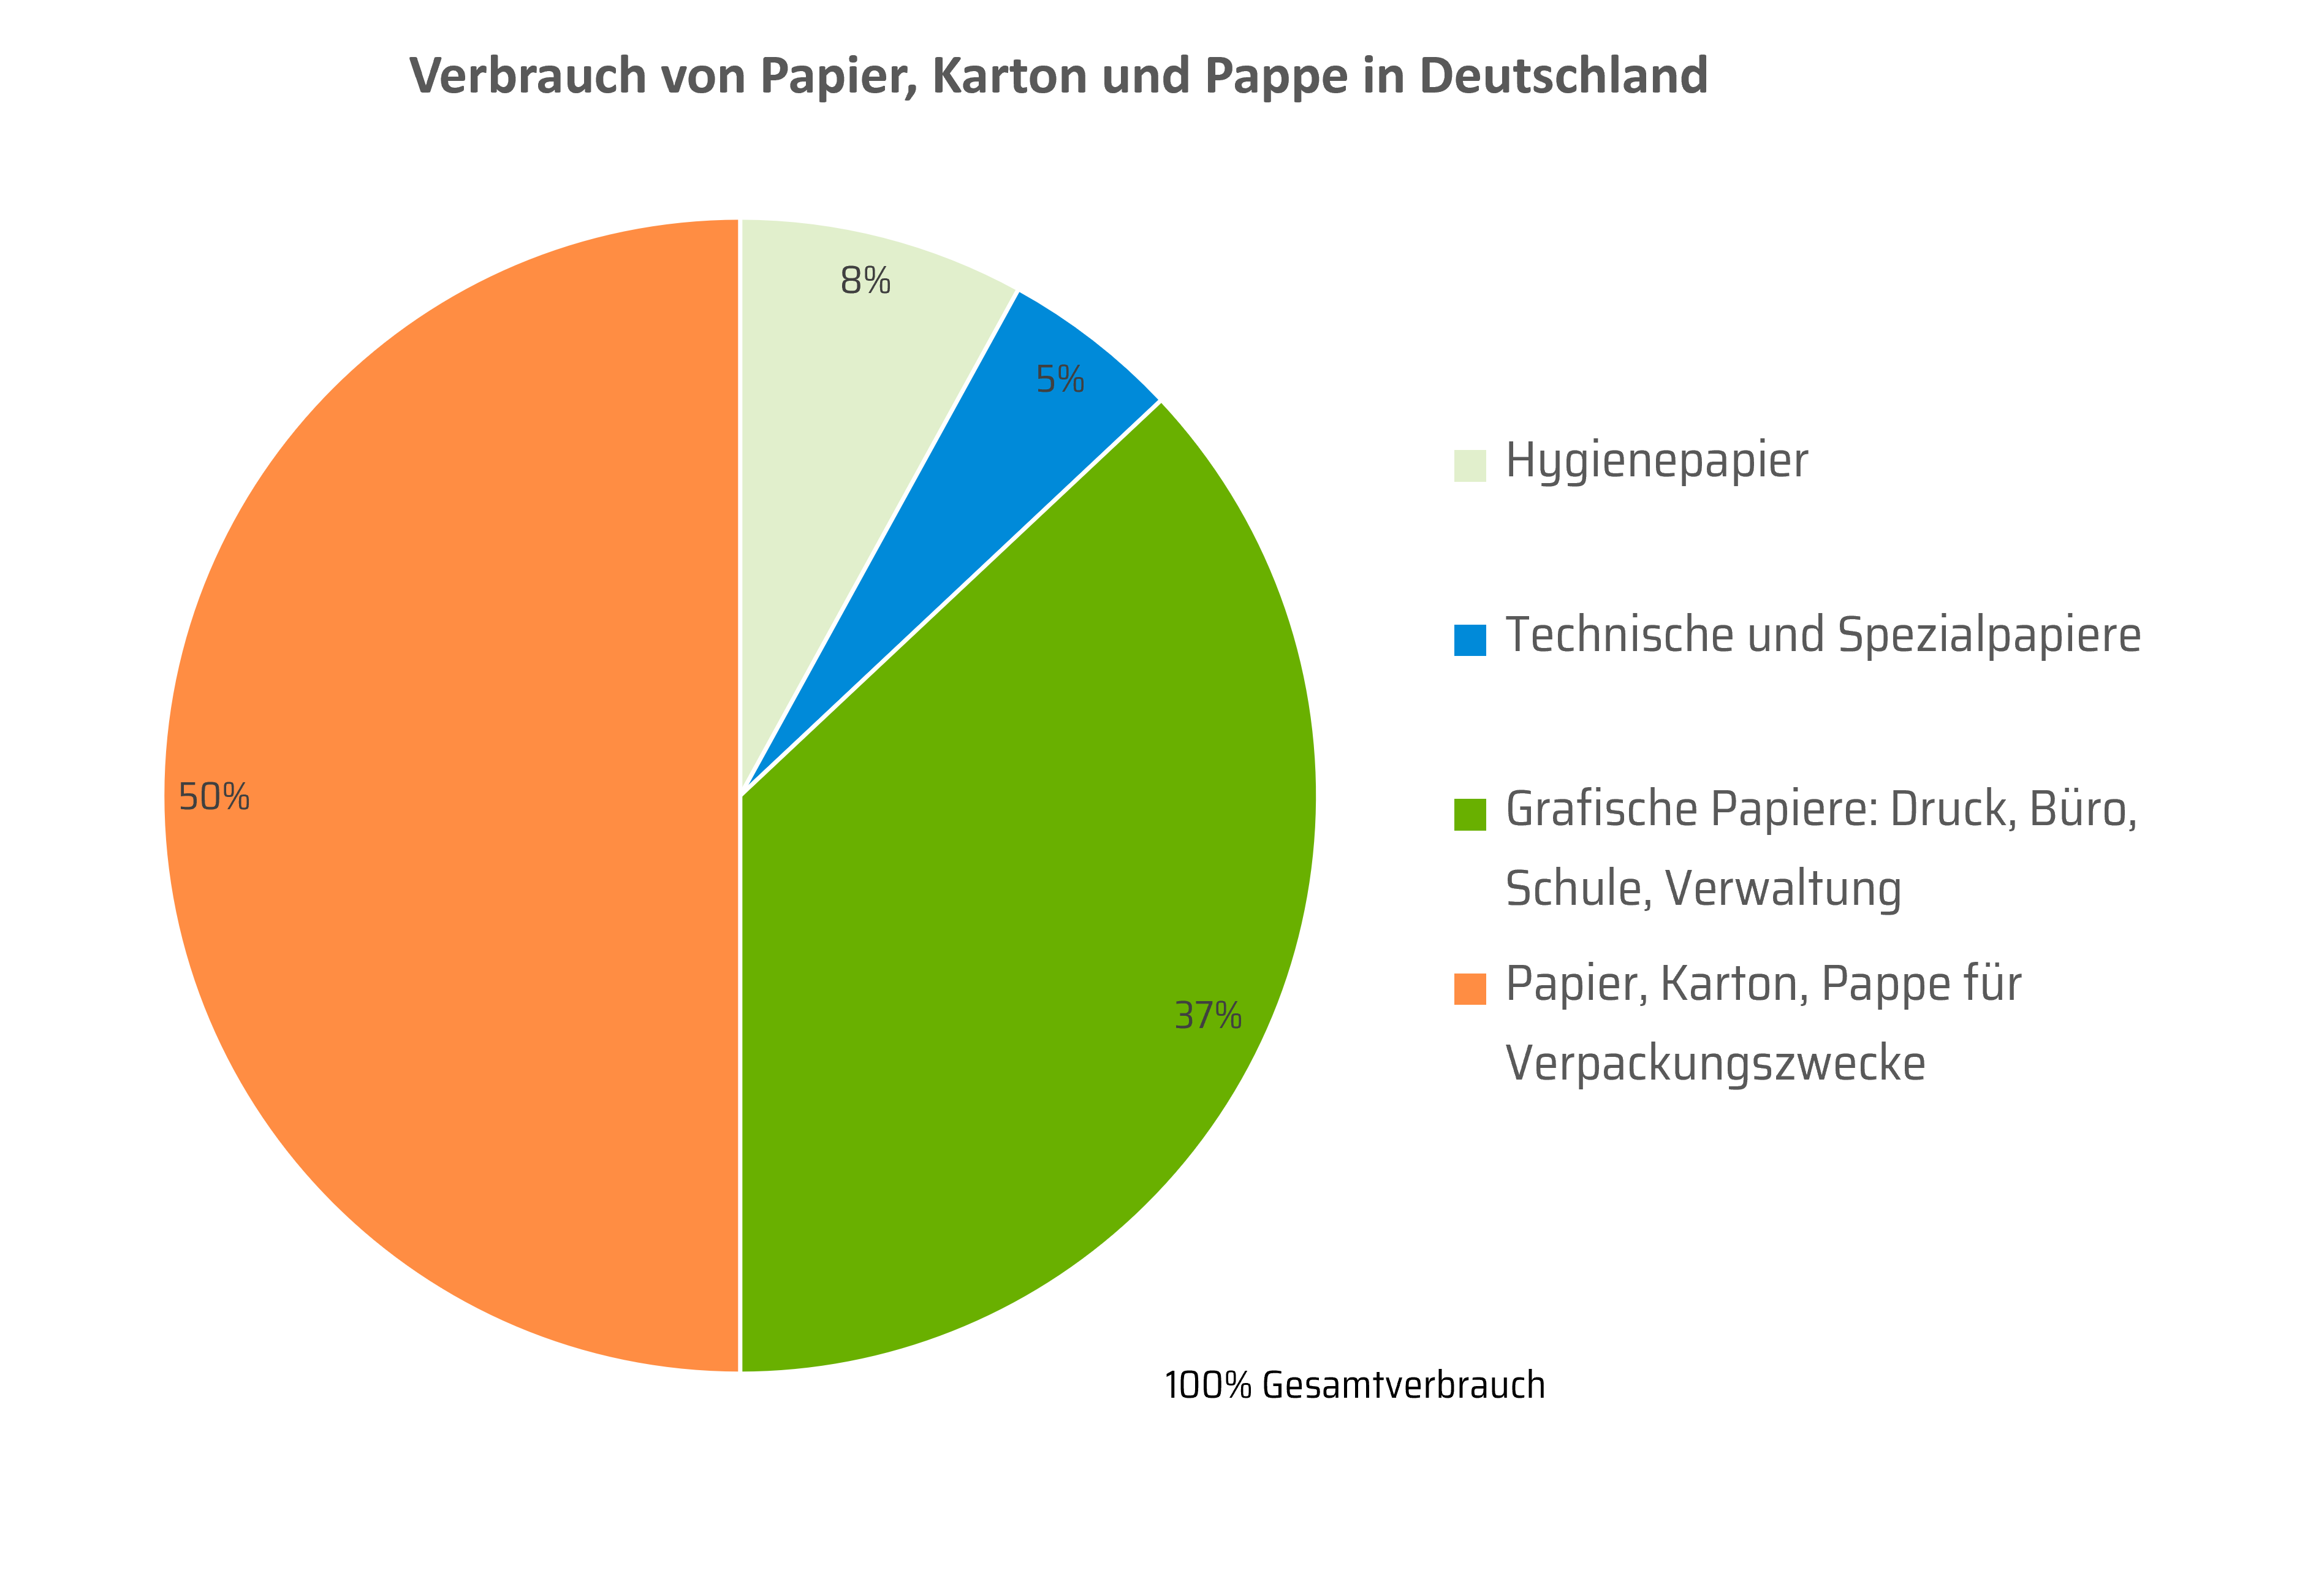 Hier ist ein Tortendiagramm dargestellt, welches den Verbrauch von Papier, Karton und Pappe in Deutschland prozentual abbildet.  Hygienepapier: 8% Technische und Spezialpapiere: 5% Grafische Papiere: Druck, Büro, Schule, Verwaltung: 37% Papier, Karton, Pappe für Verpackungszwecke: 50%